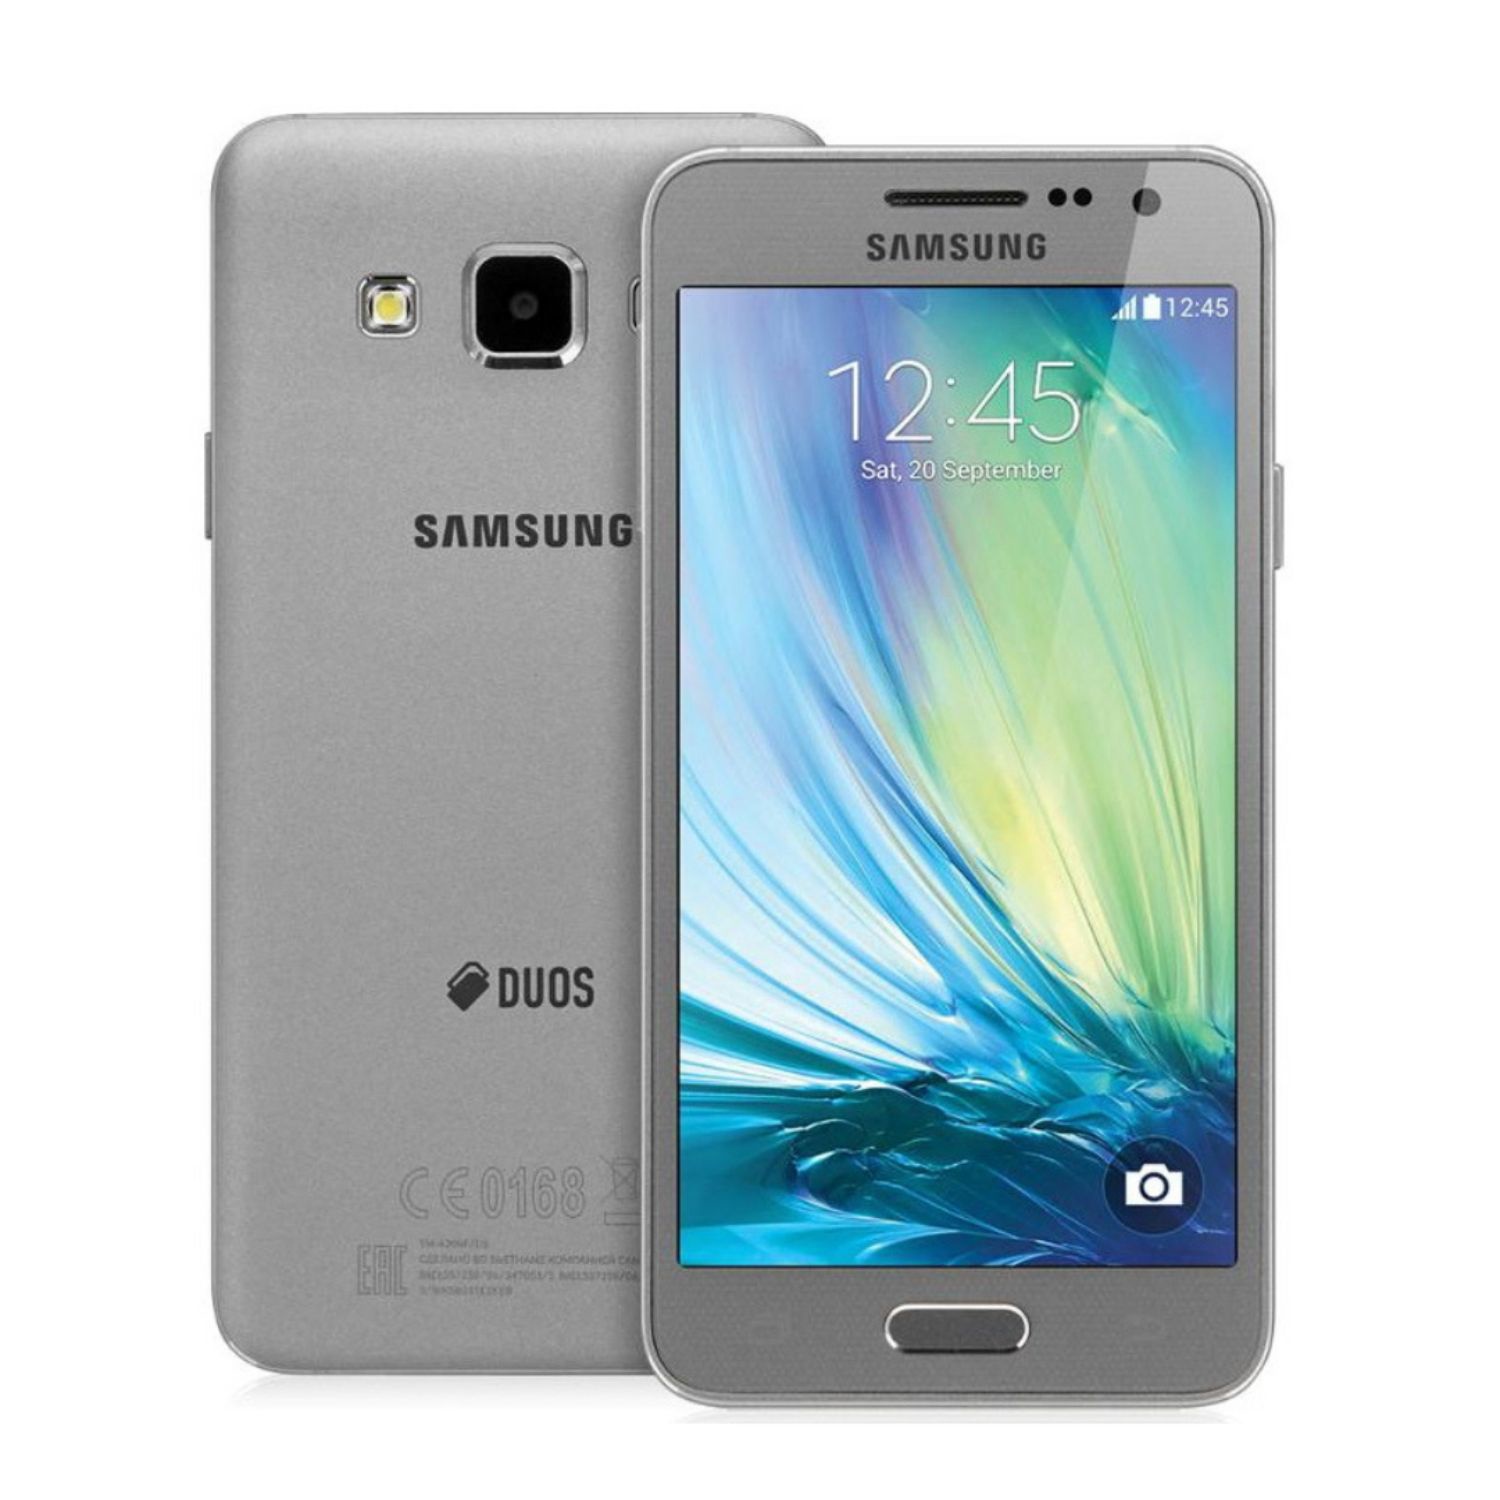 Samsung Galaxy a3 2015